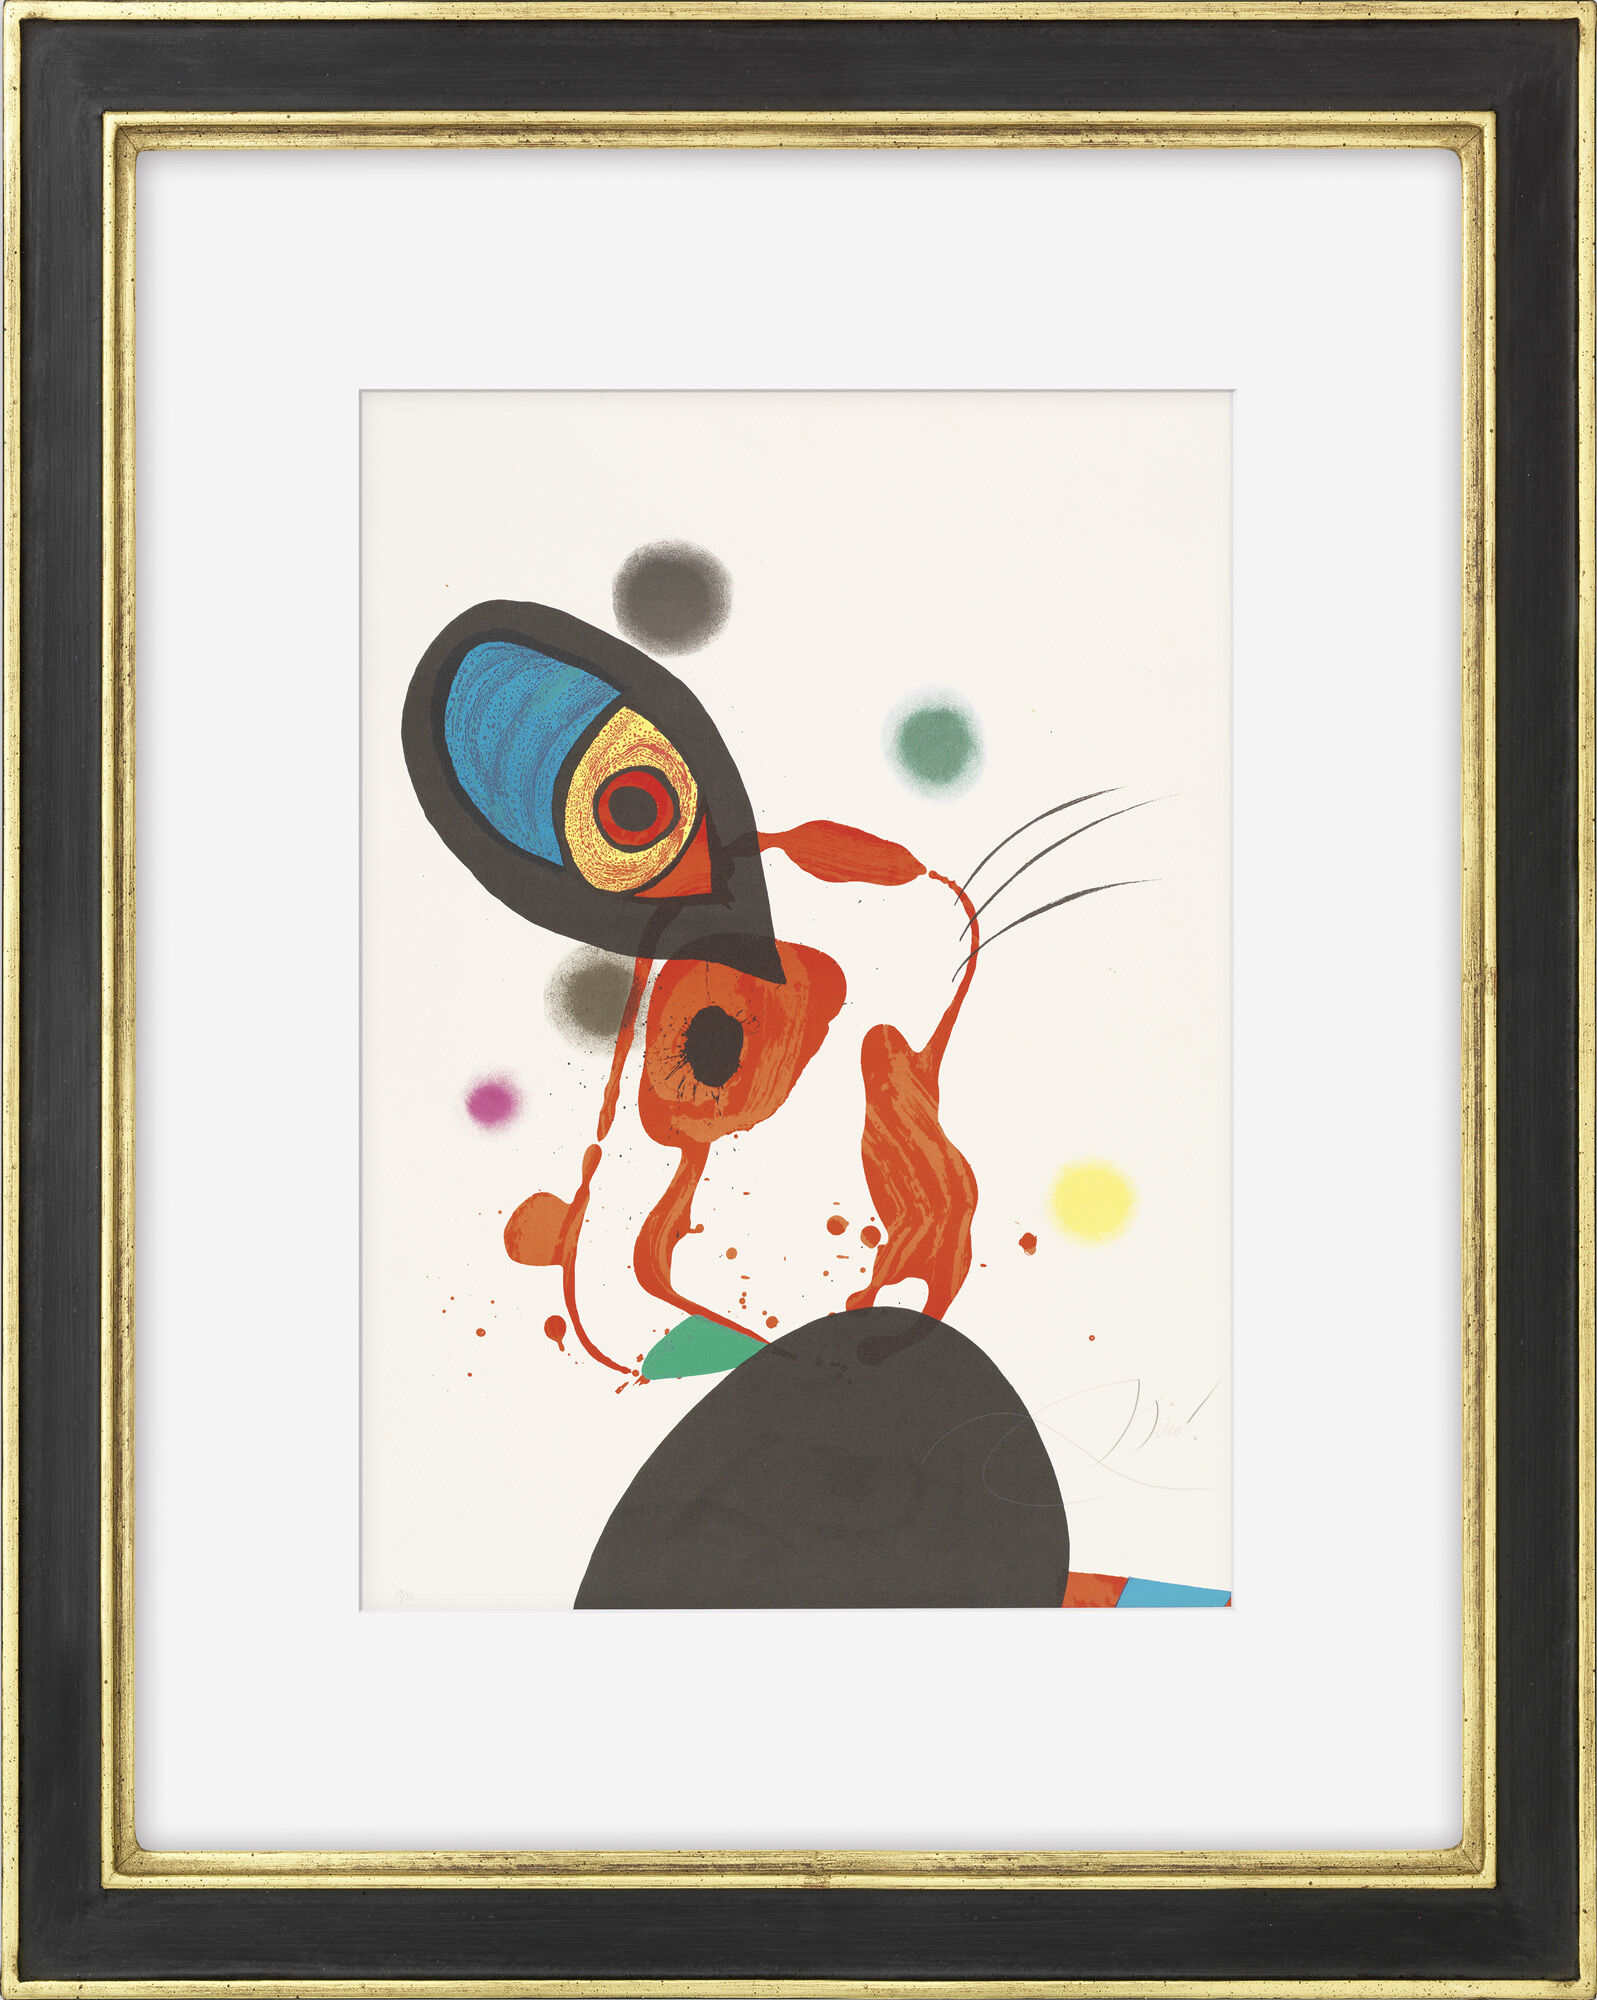 Billedet "L'Eunuque Impérial" (1975) von Joan Miró